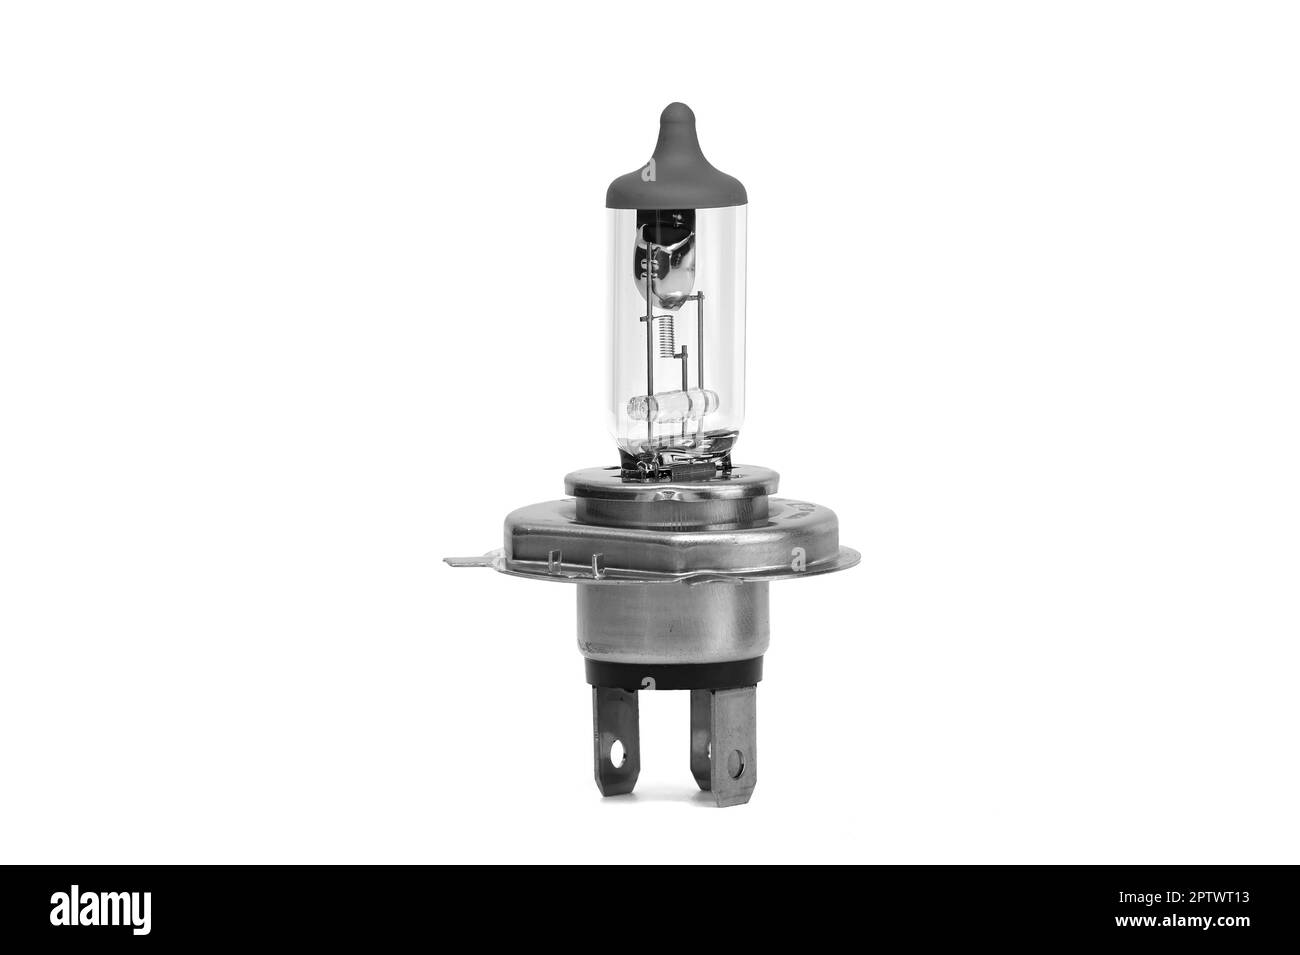 Conjunto de bombillas para lámparas de coche en escritorio de madera  blanca. bombillas de tecnología moderna para reparación de vechile. equipo  ligero